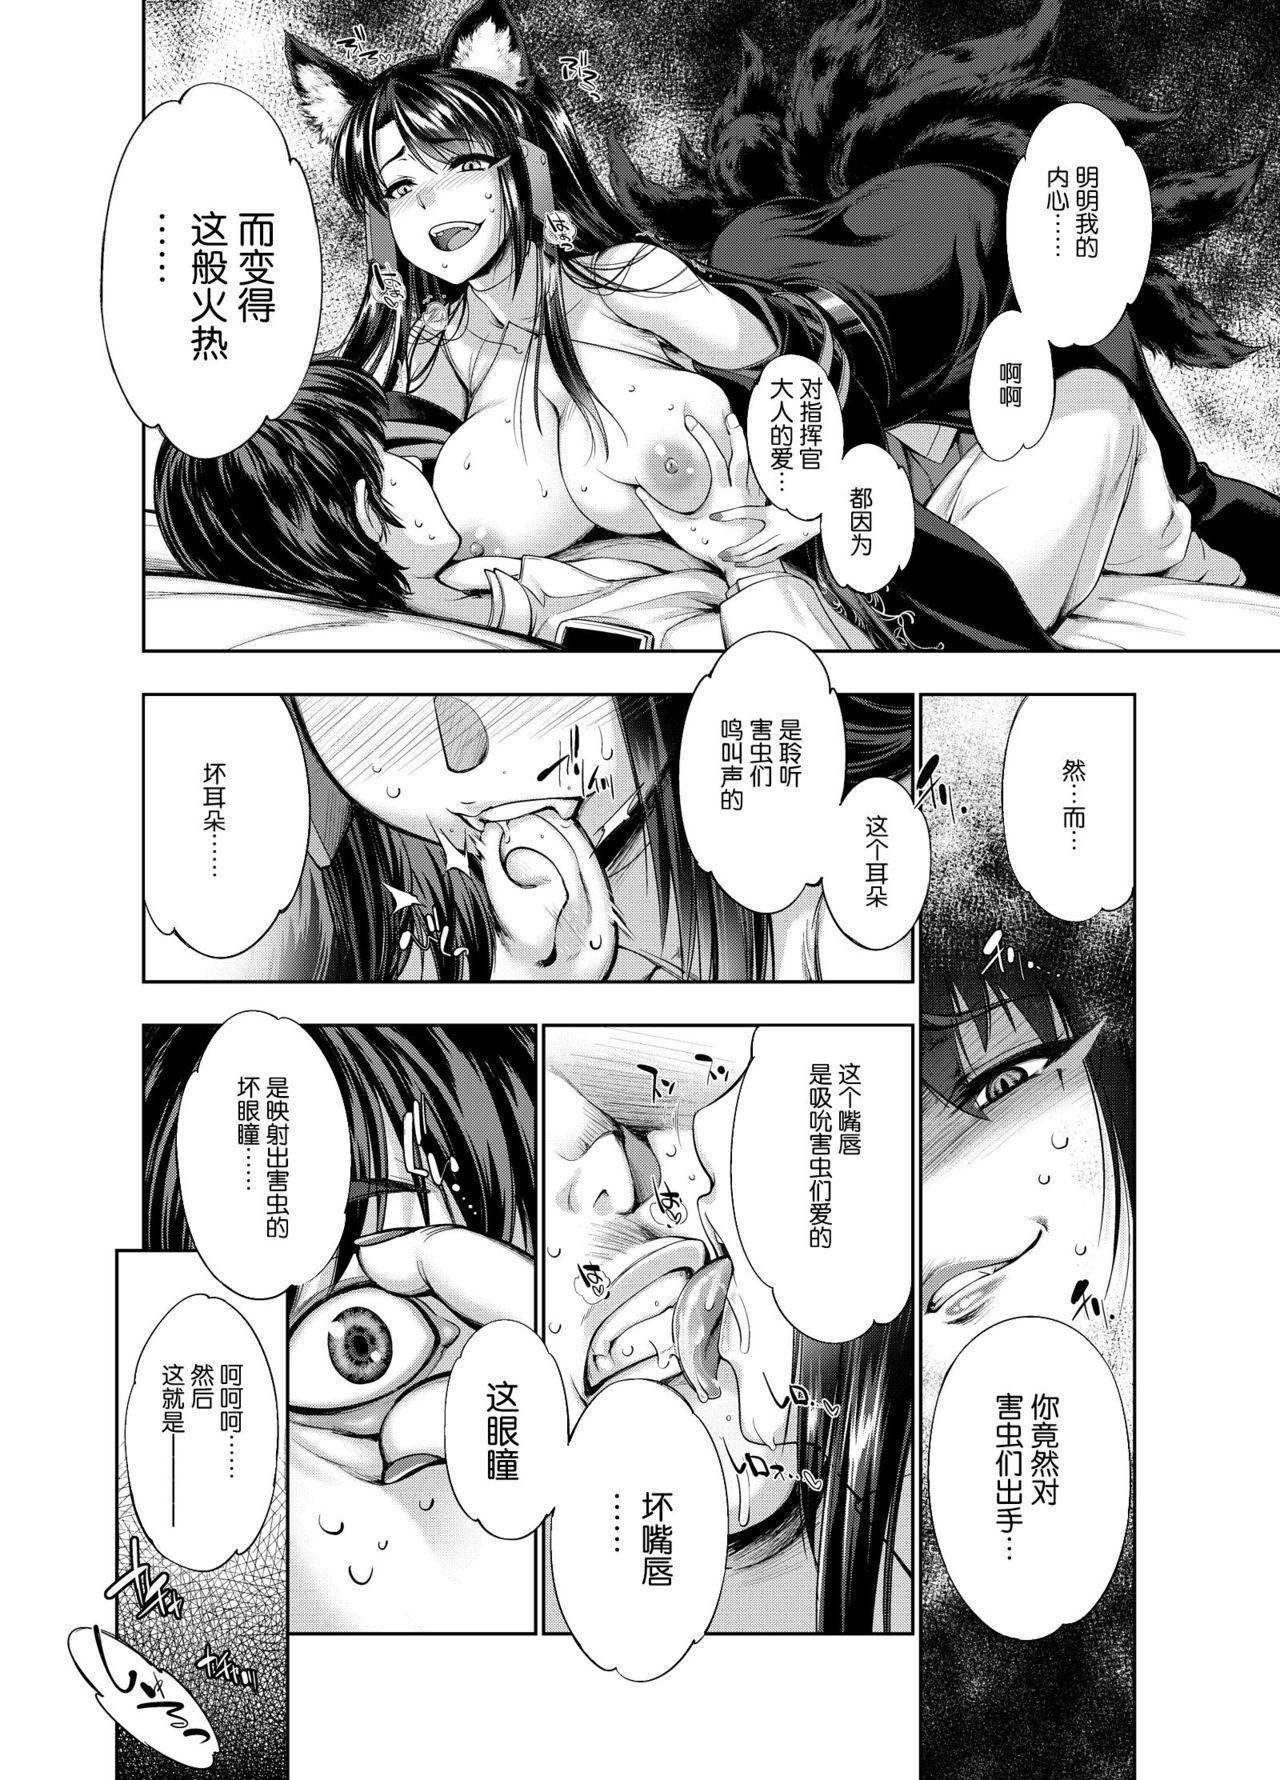 Naked Sex Akagiwazurai - Azur lane Hot Blow Jobs - Page 7